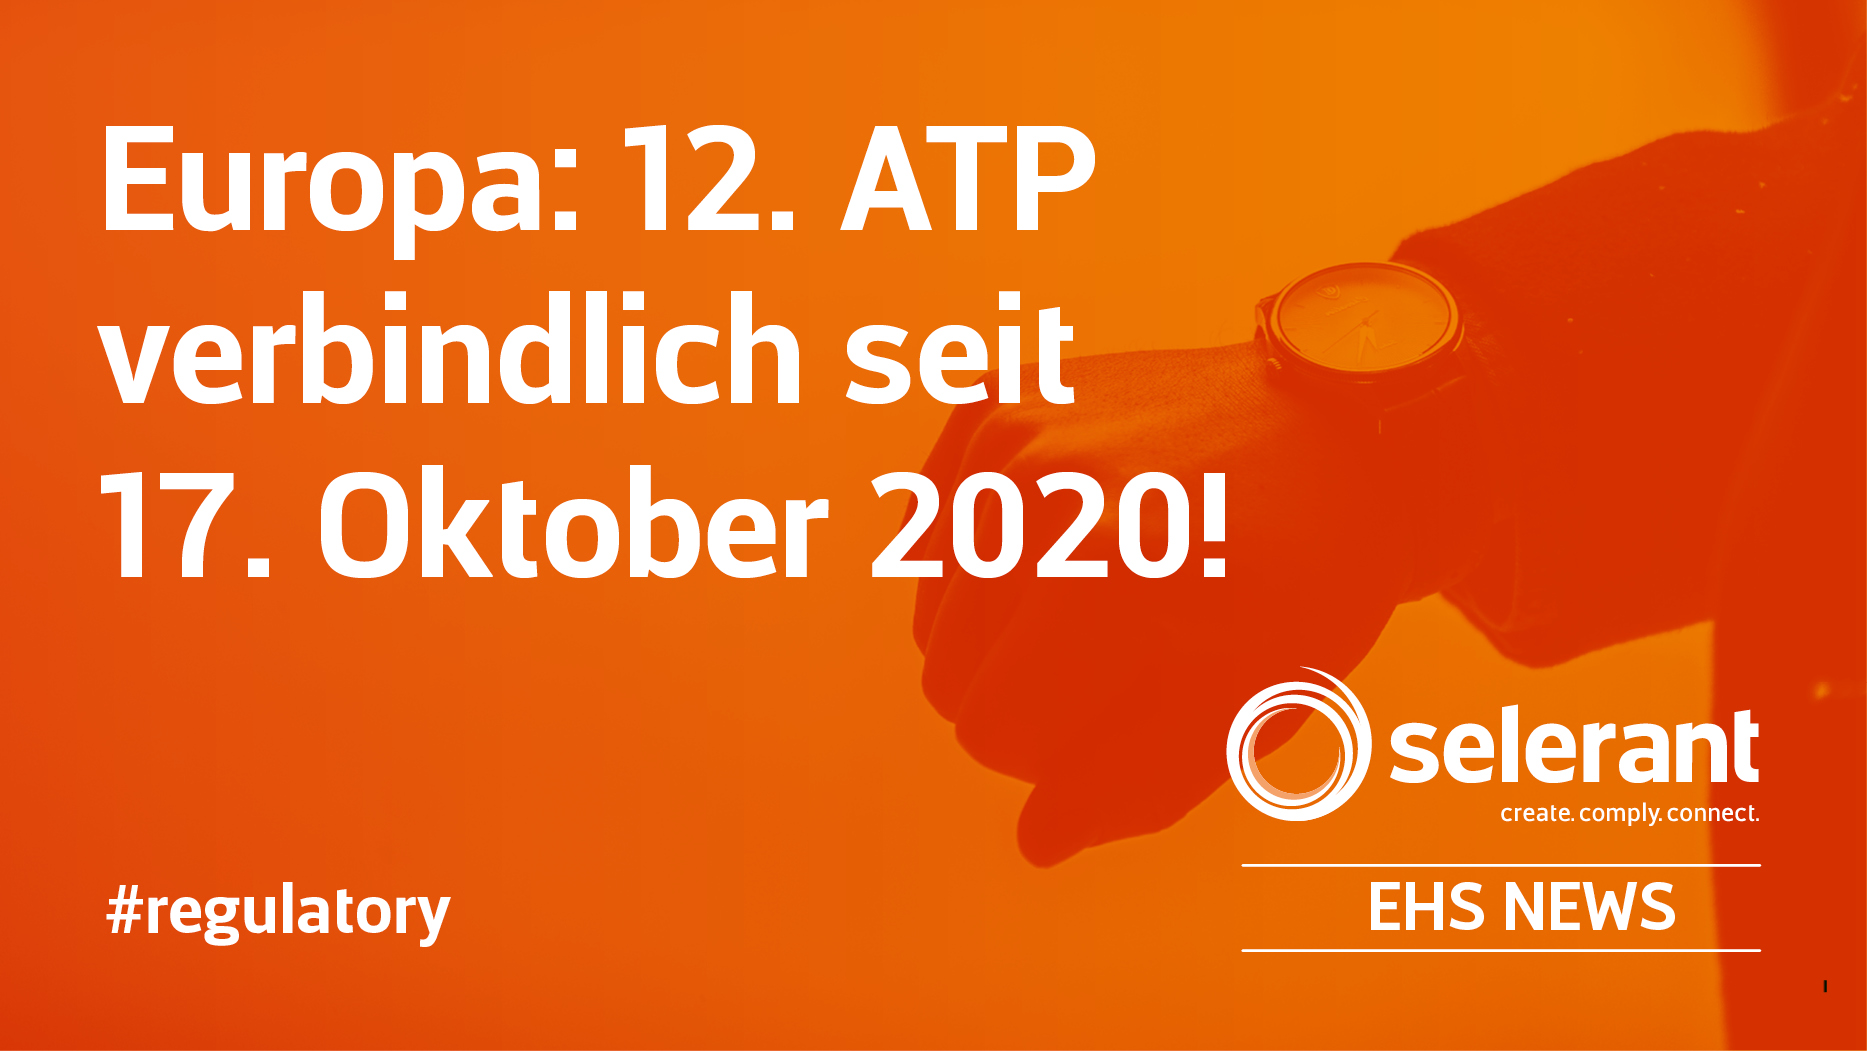 Europa: 12. ATP verbindlich seit 17. Oktober 2020!